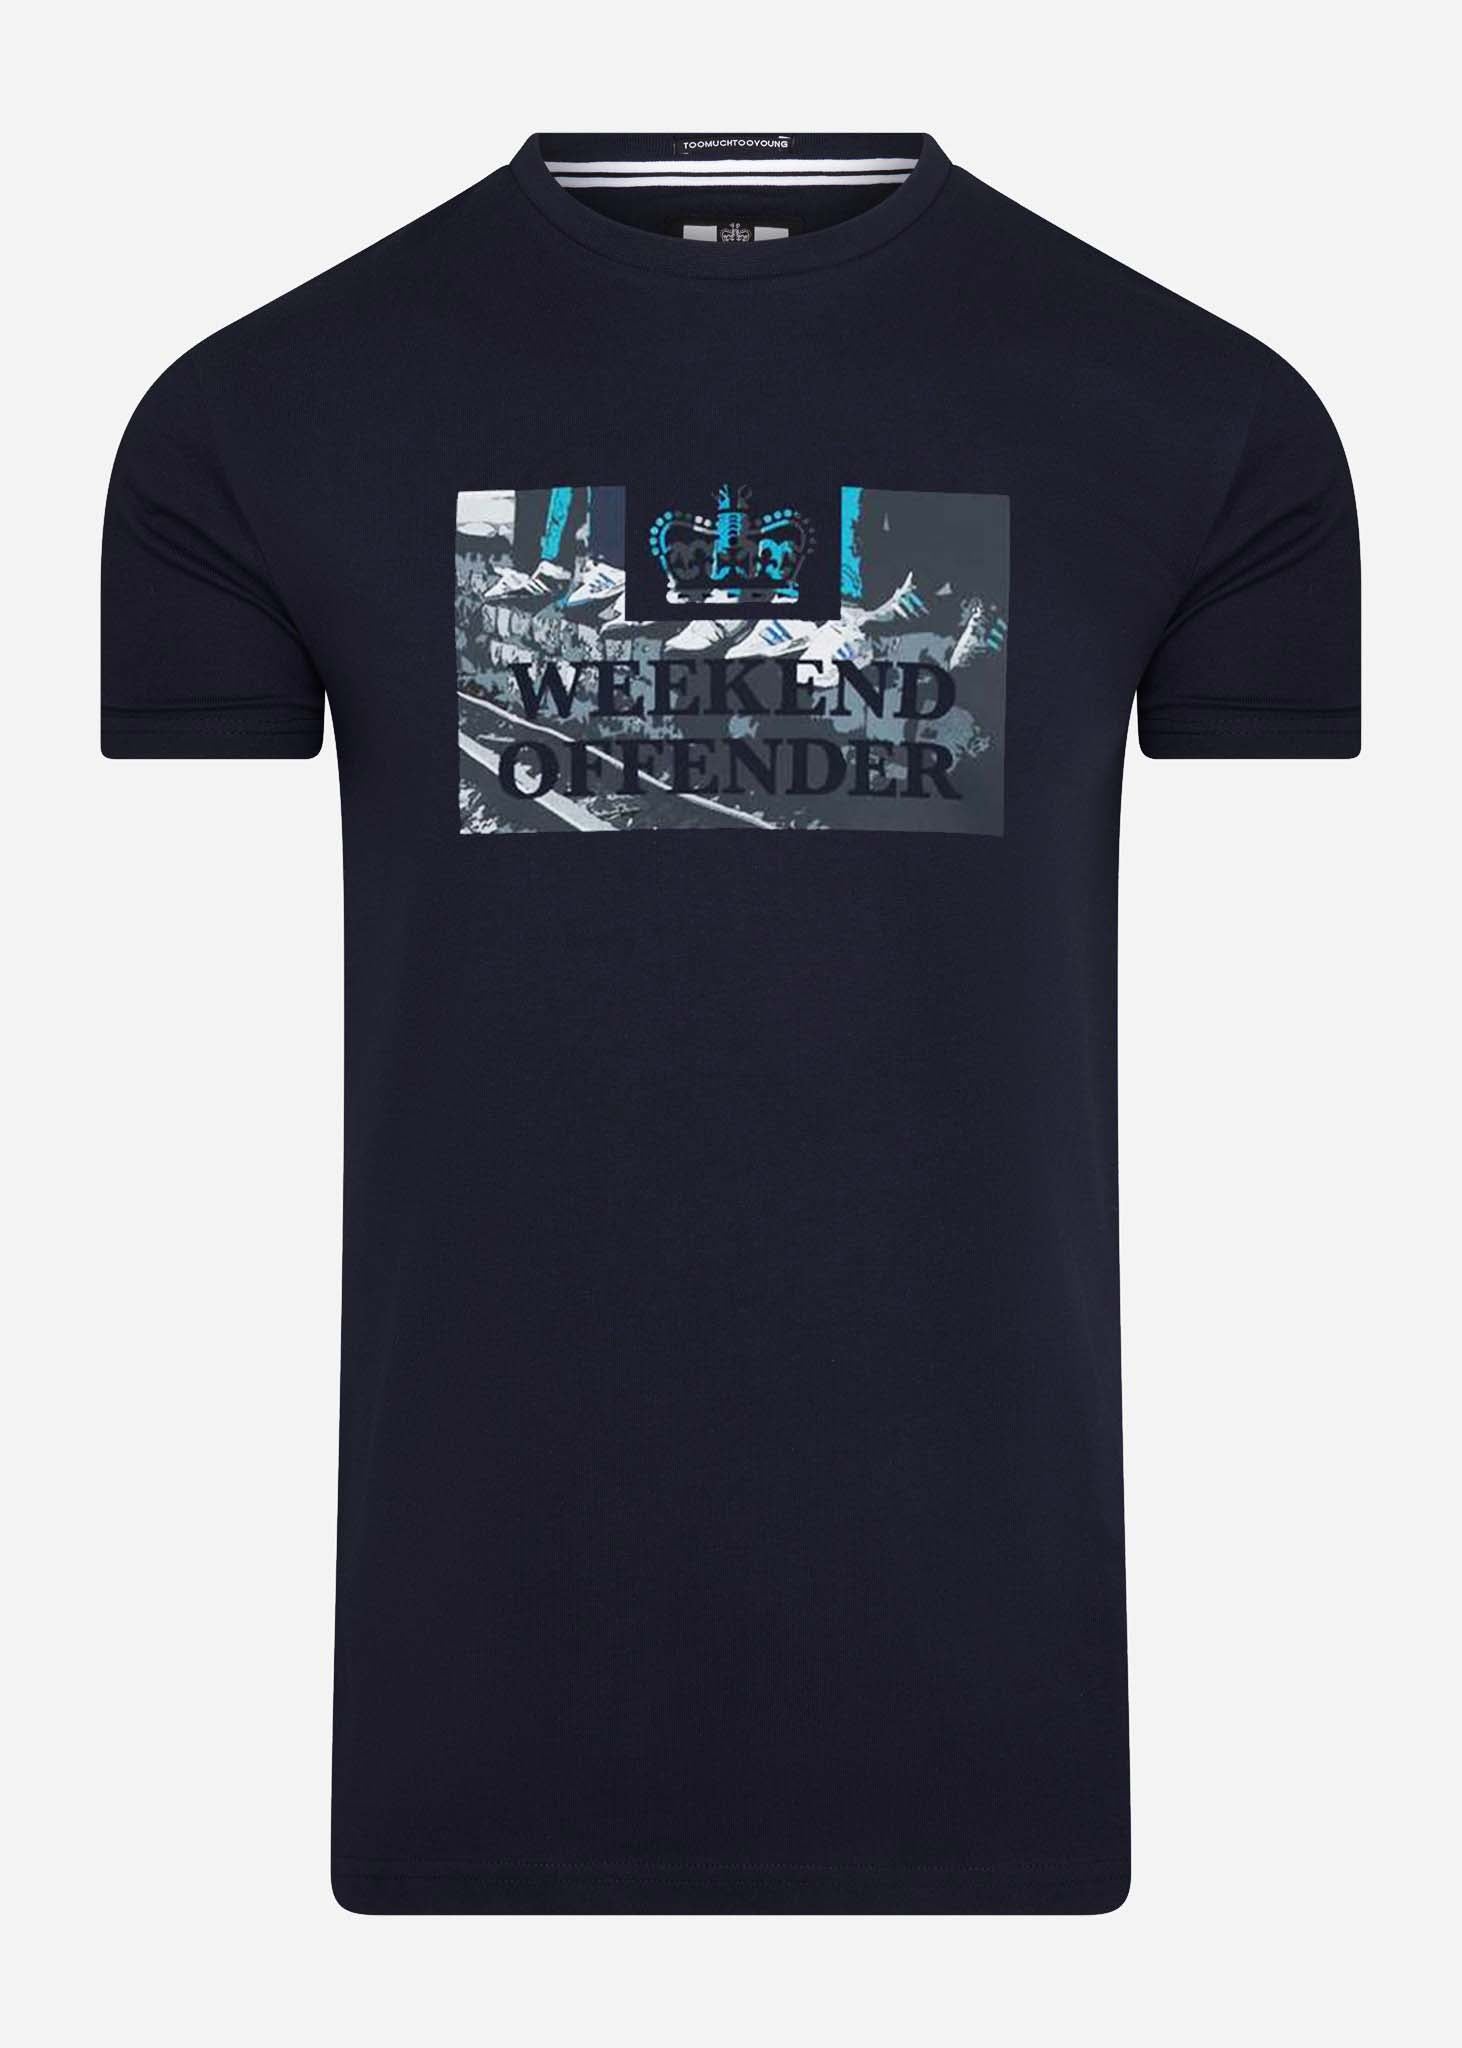 weekend offender t-shirt navy